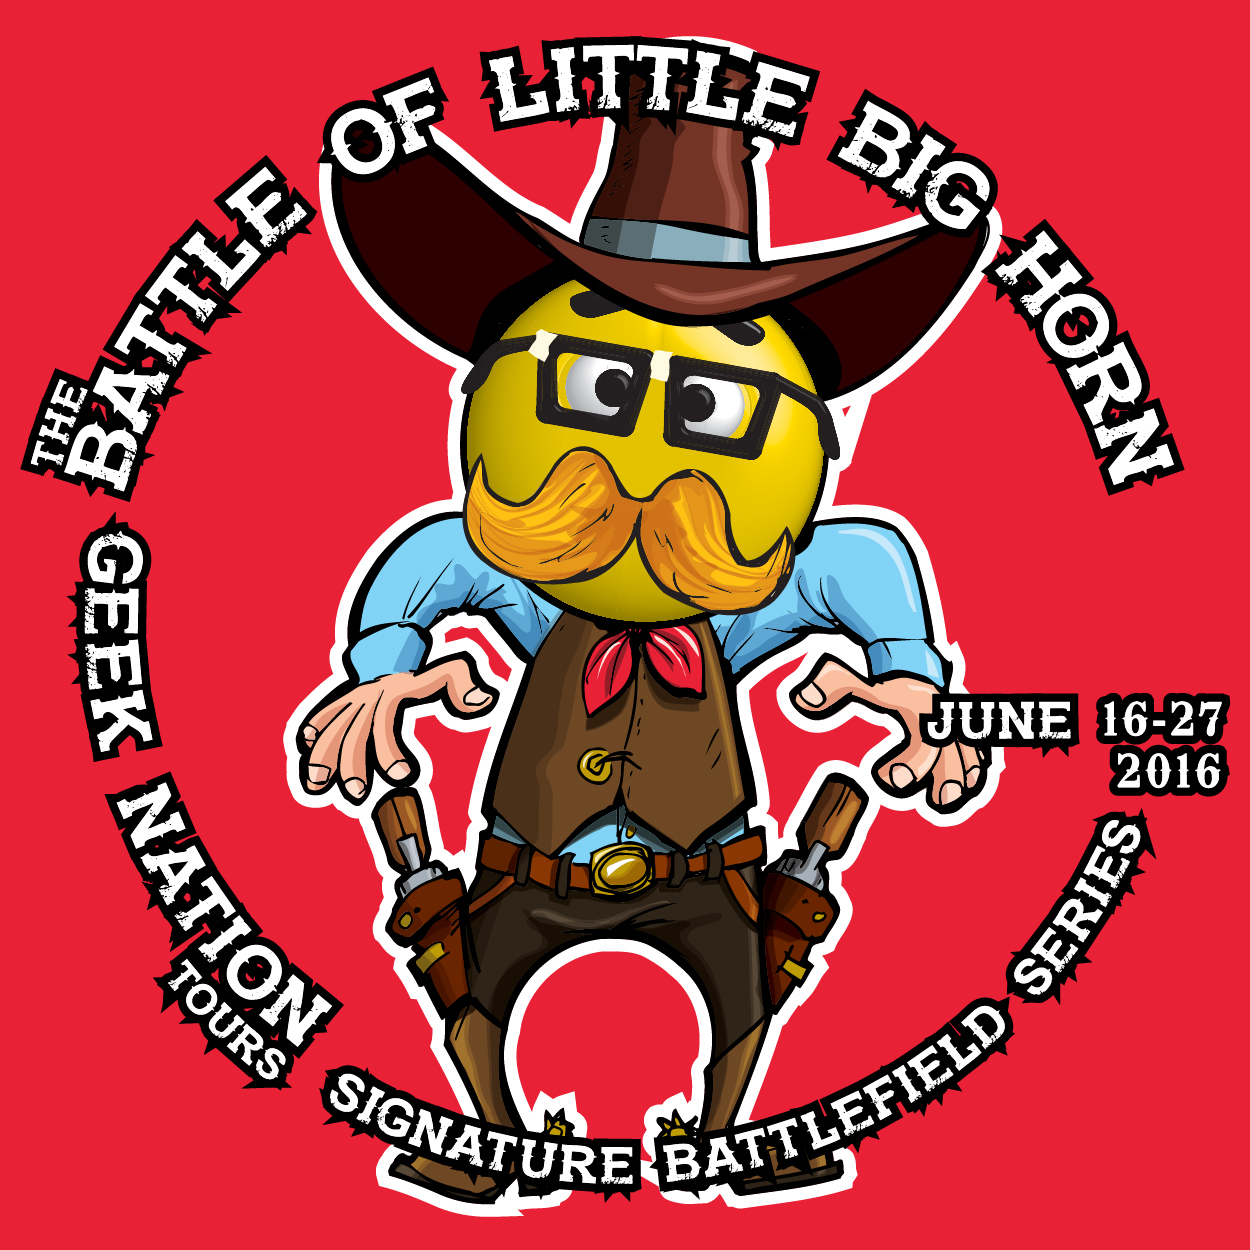 geek nation - battle for little big horn - 300x300